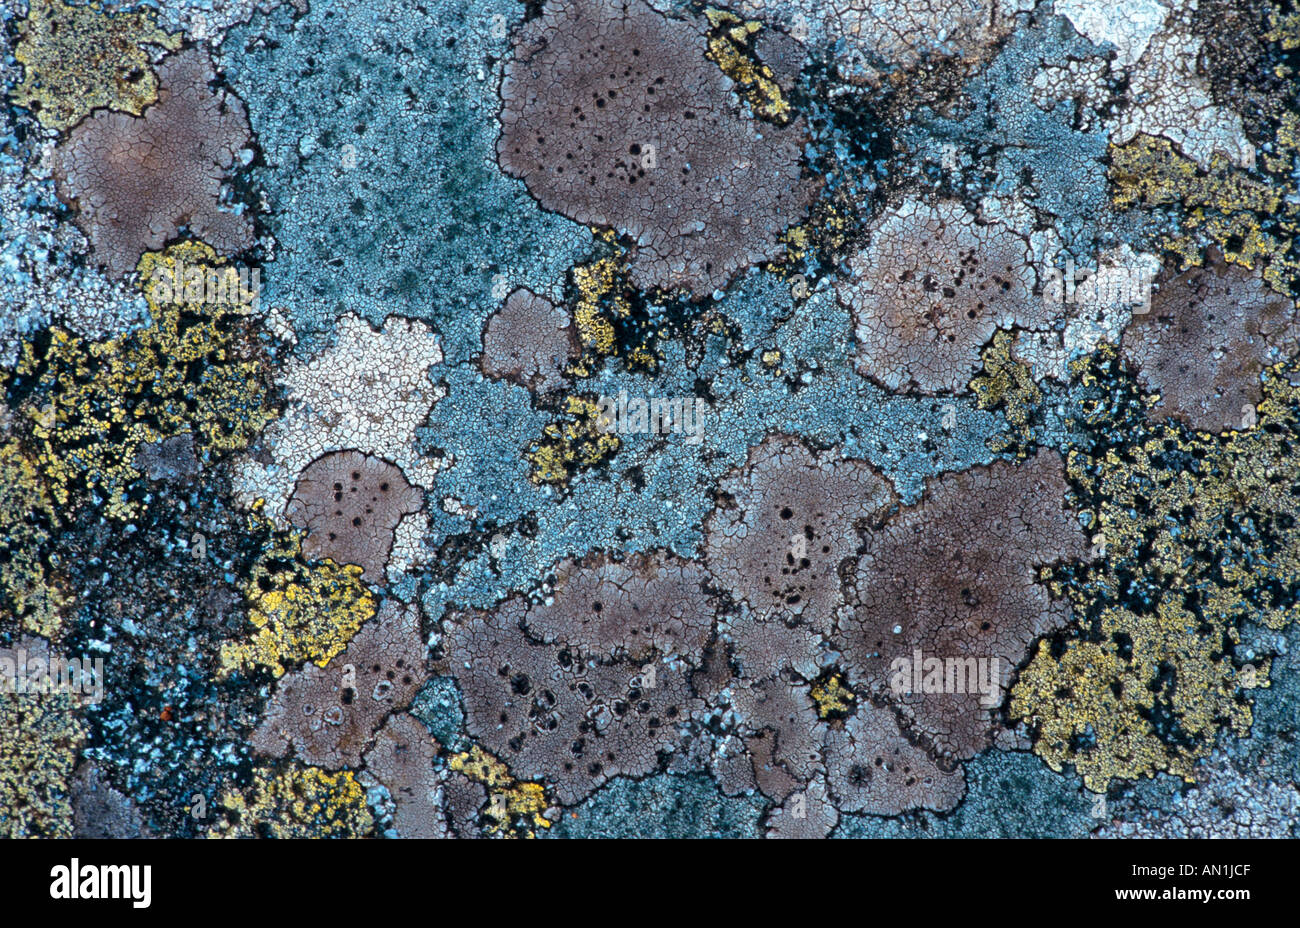 lichen (Candelariella vitellina), detail, United Kingdom, Scotland Stock Photo